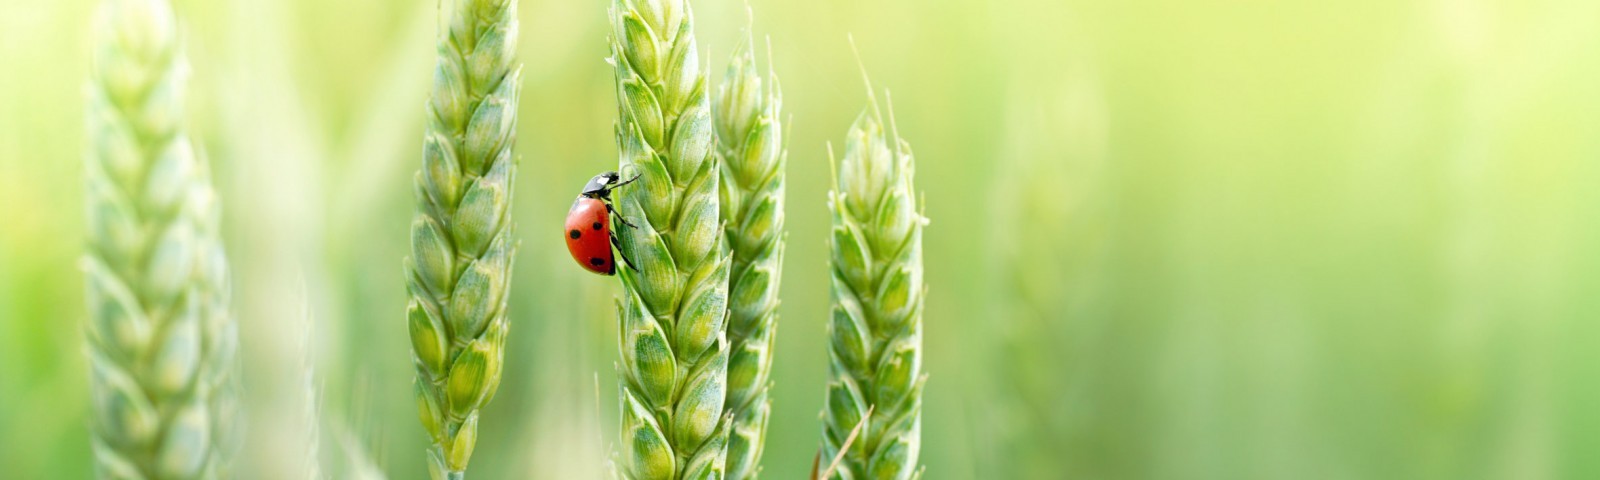 Ladybird climbing up an ear of wheat